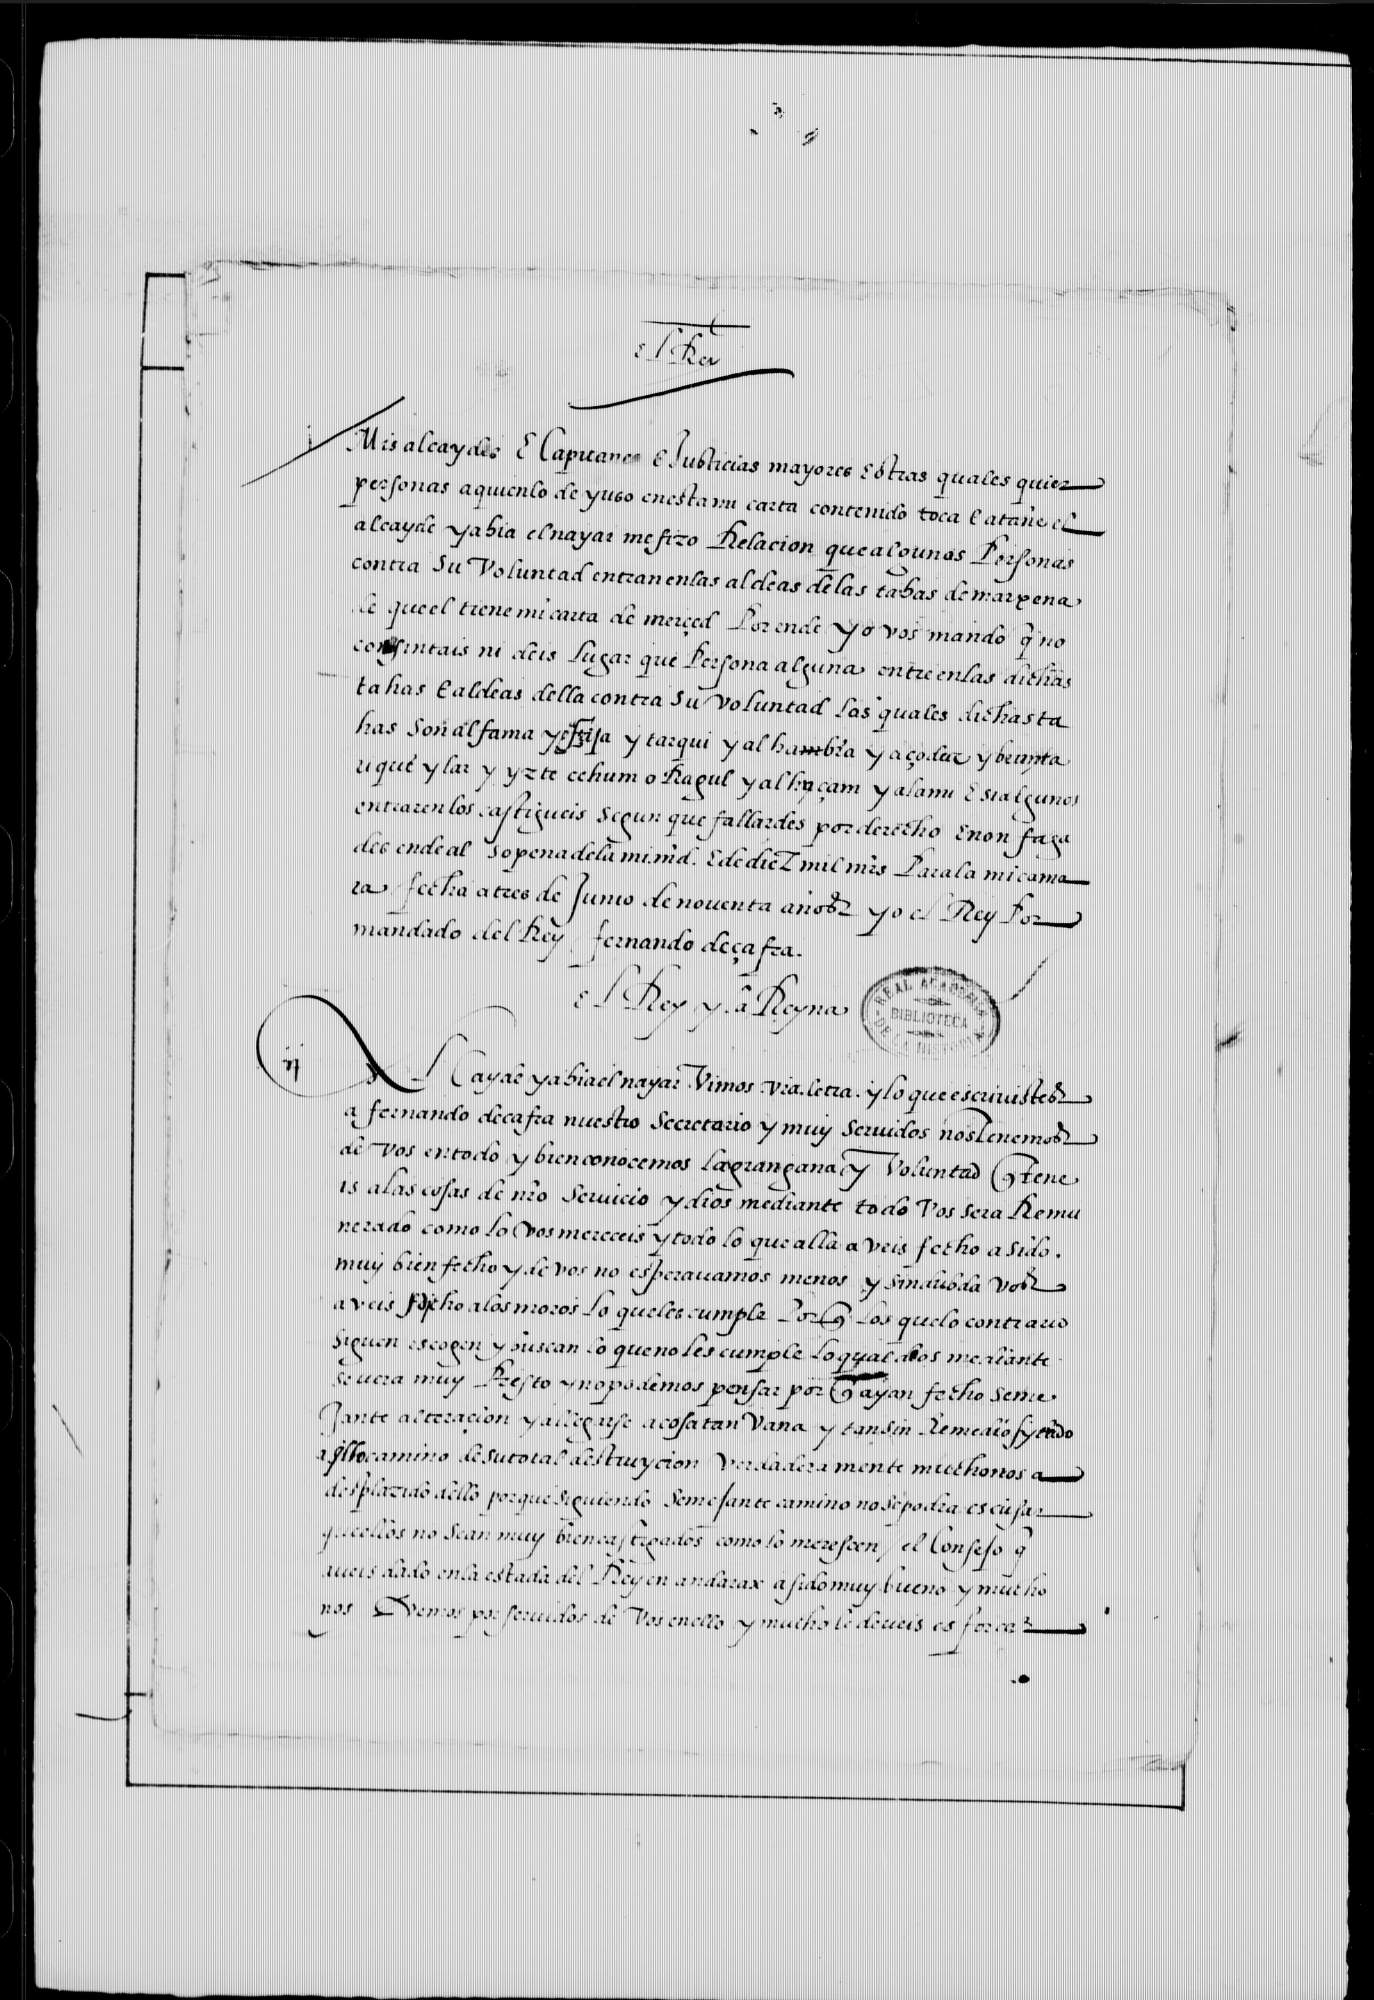 Carta de Fernando V e Isabel I al alcaideYahia el Nayar, en creencia de Diego de Soto, comendador de Moratalla en la Orden de Santiago.